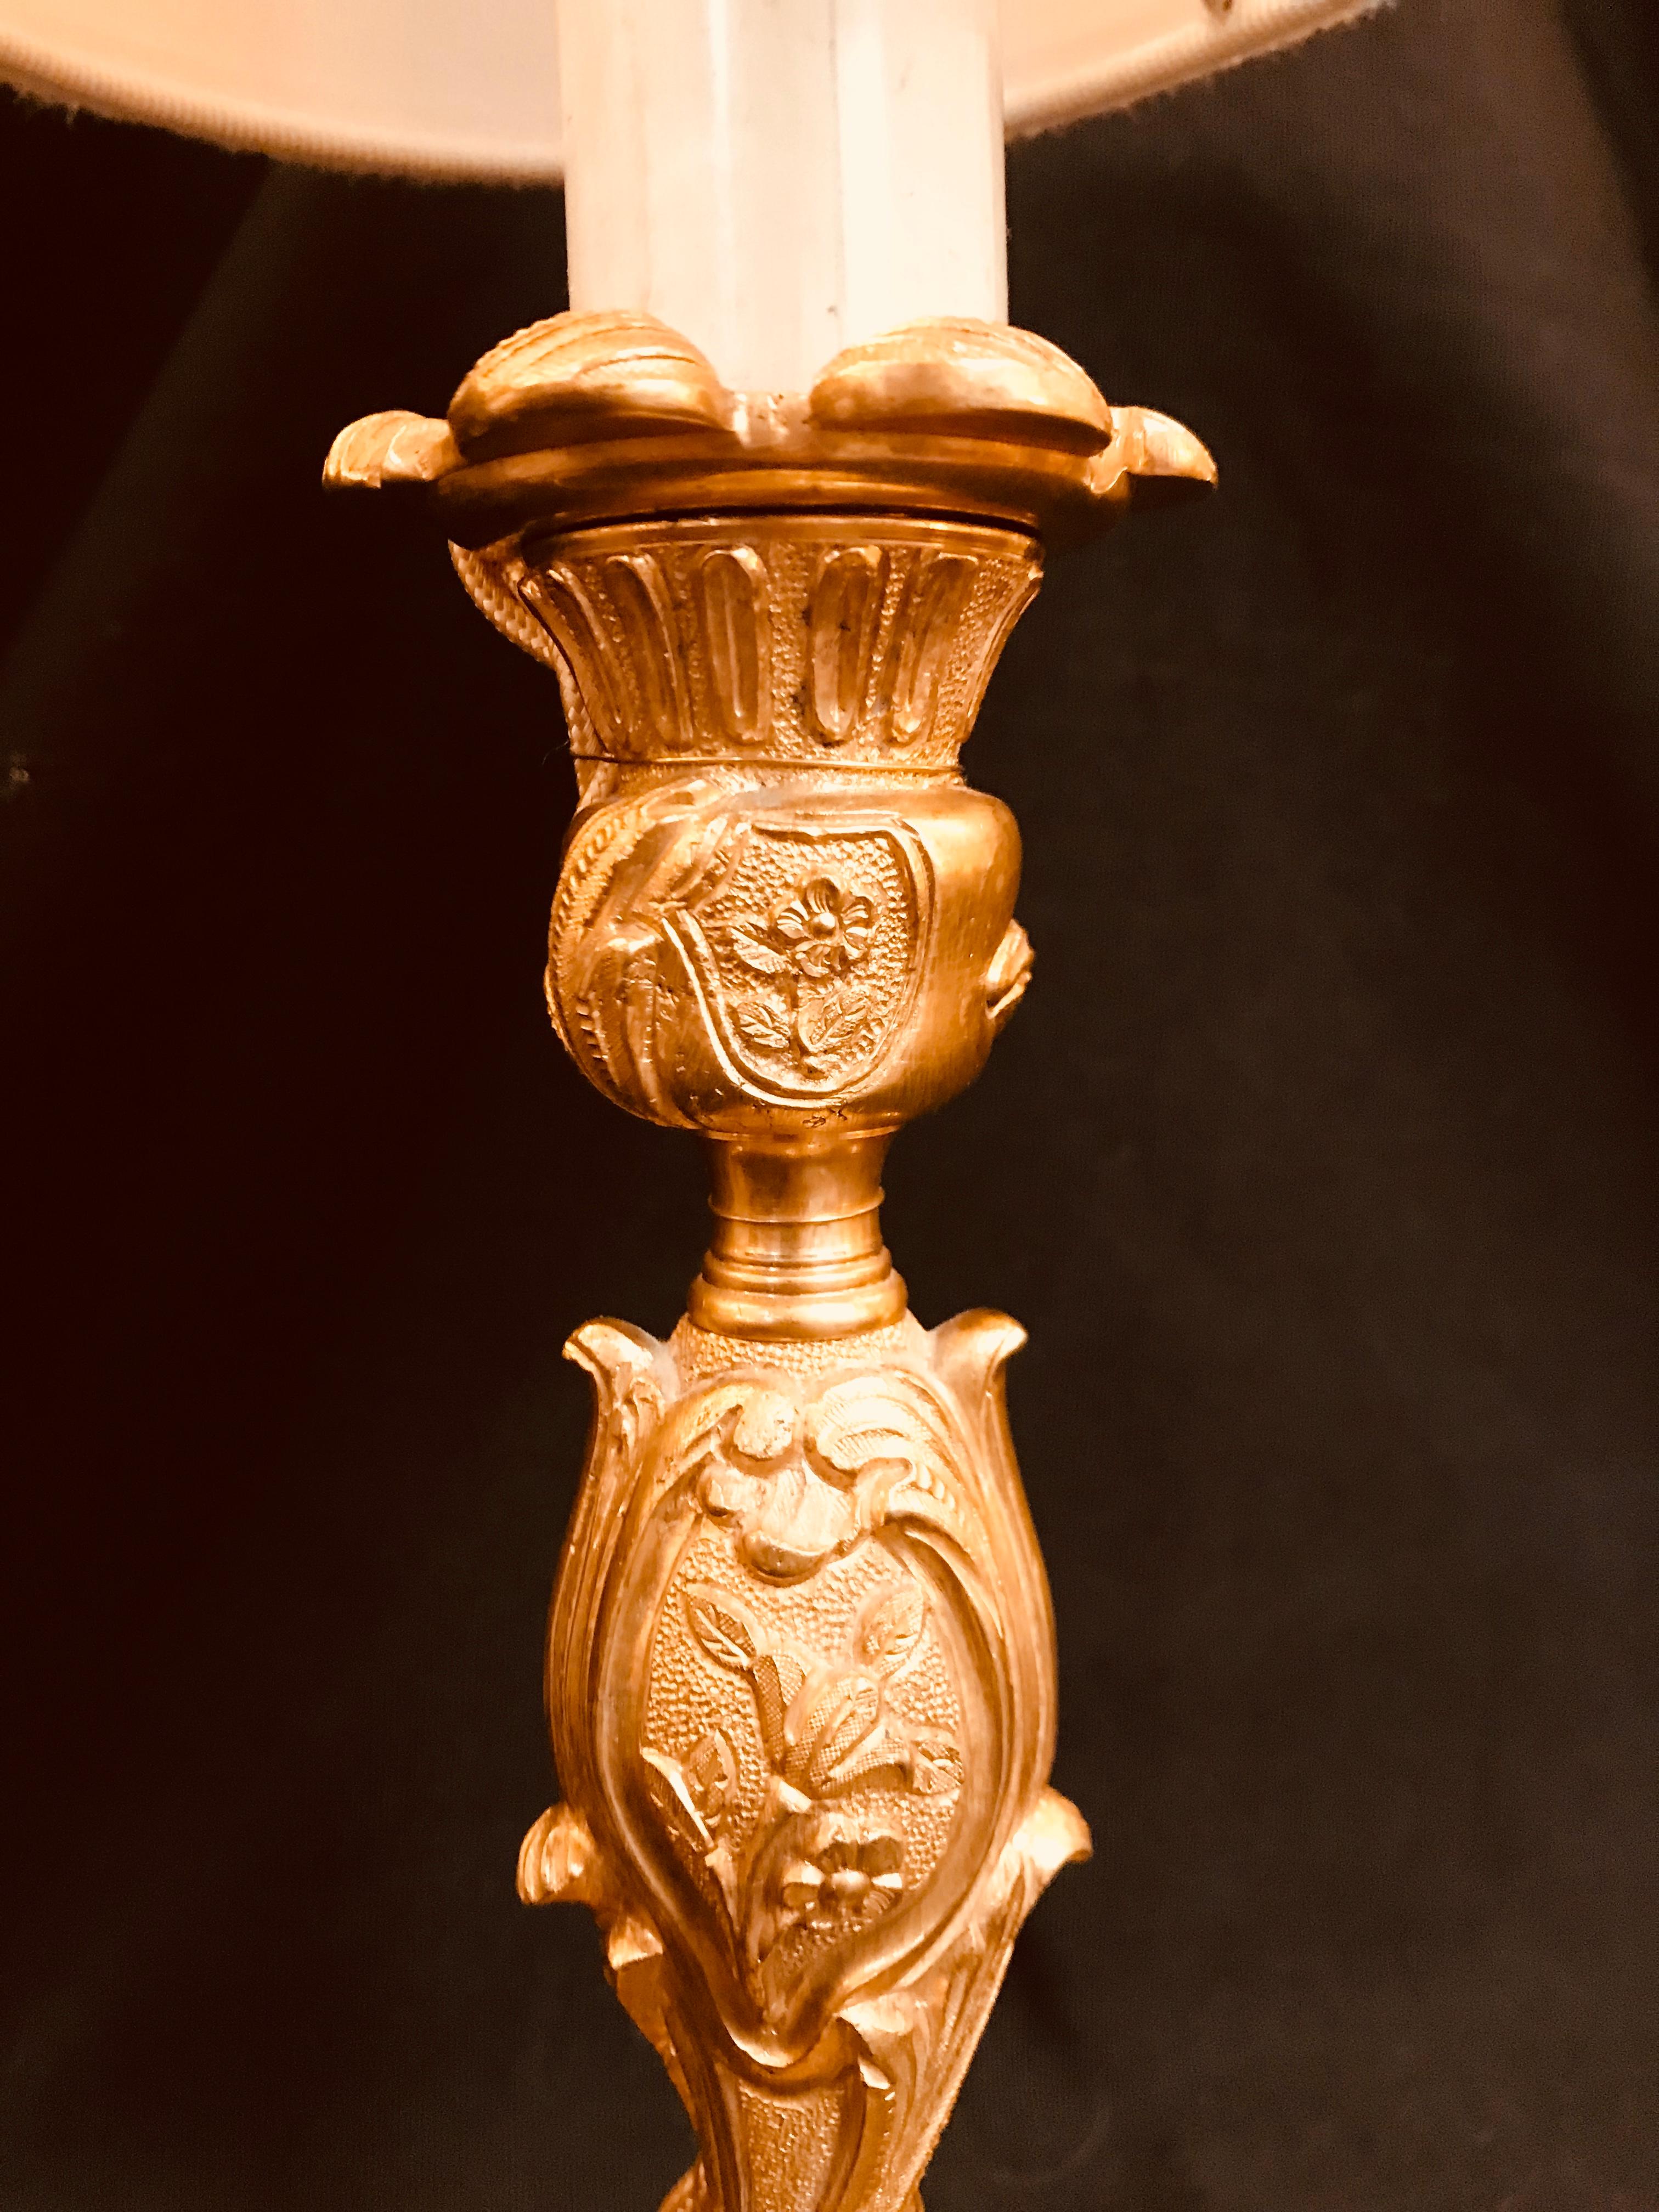 Ce petit chandelier de style Louis XV en bronze doré par Gherardo Degli Albizzi  serait idéal pour être placé sur une table de chevet.
Il reprend le grand goût de la décoration de la période Rococo. Ainsi, les motifs végétaux sont omniprésents dans